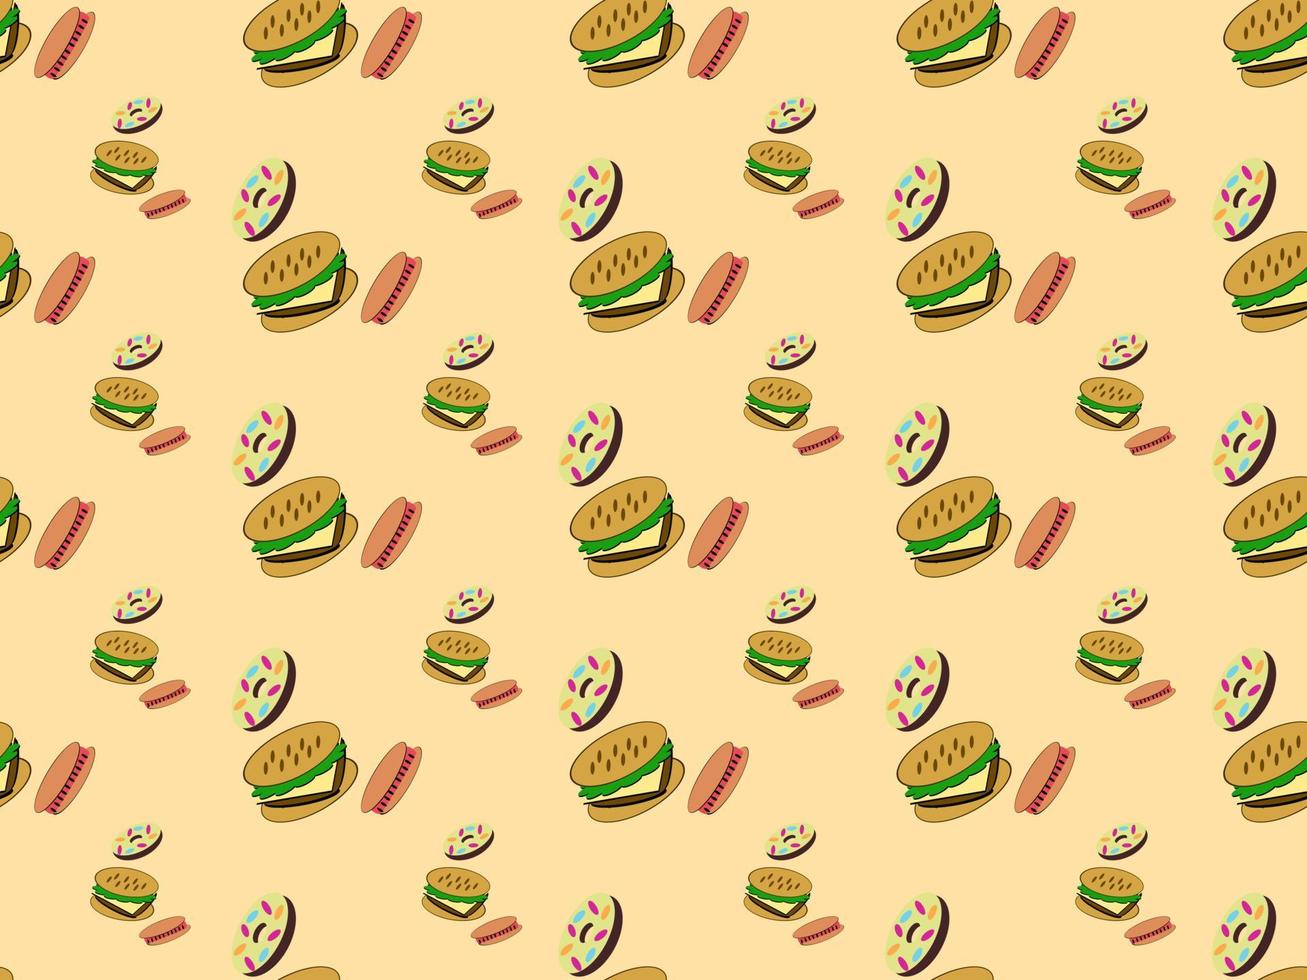 nahtlose musterzeichentrickfiguren donuts hamburger und hotdogs auf orange hintergrund. vektor